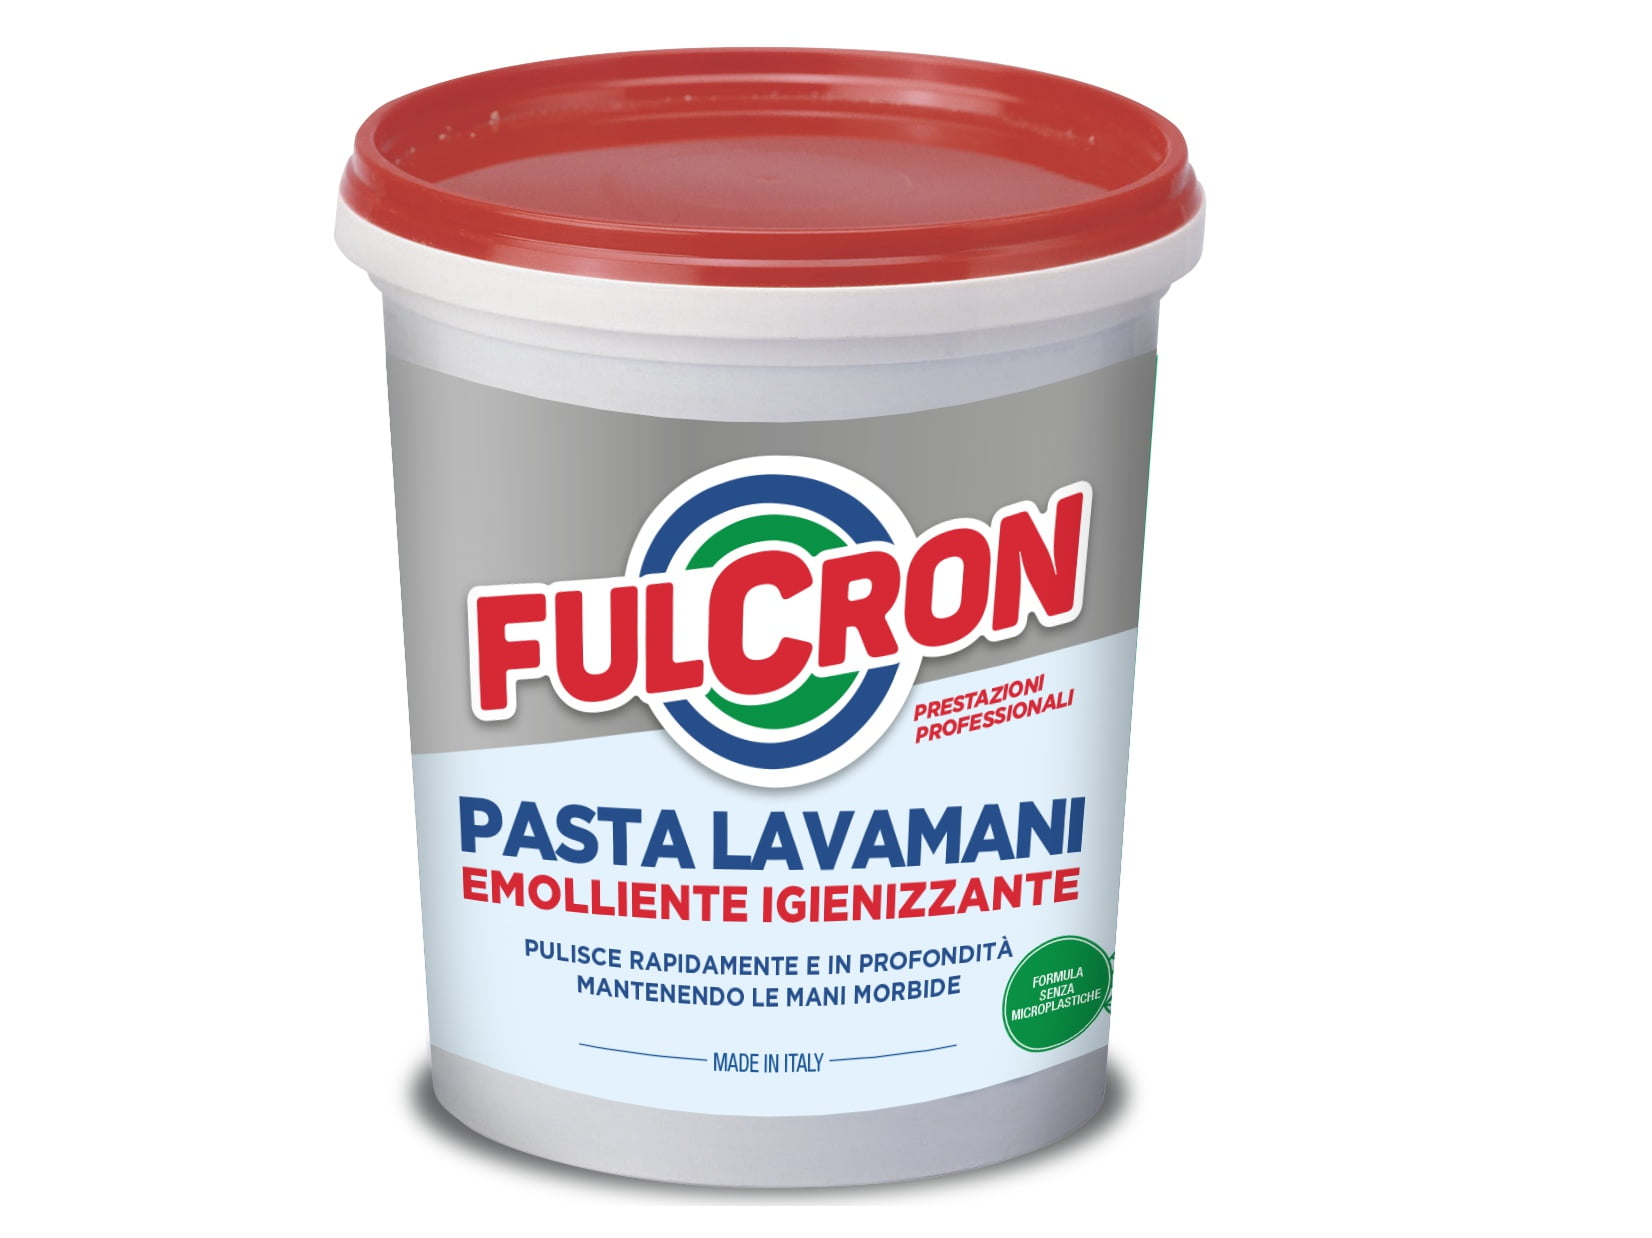 Fulcron Pasta Lavamani Igienizzante - Fulcron